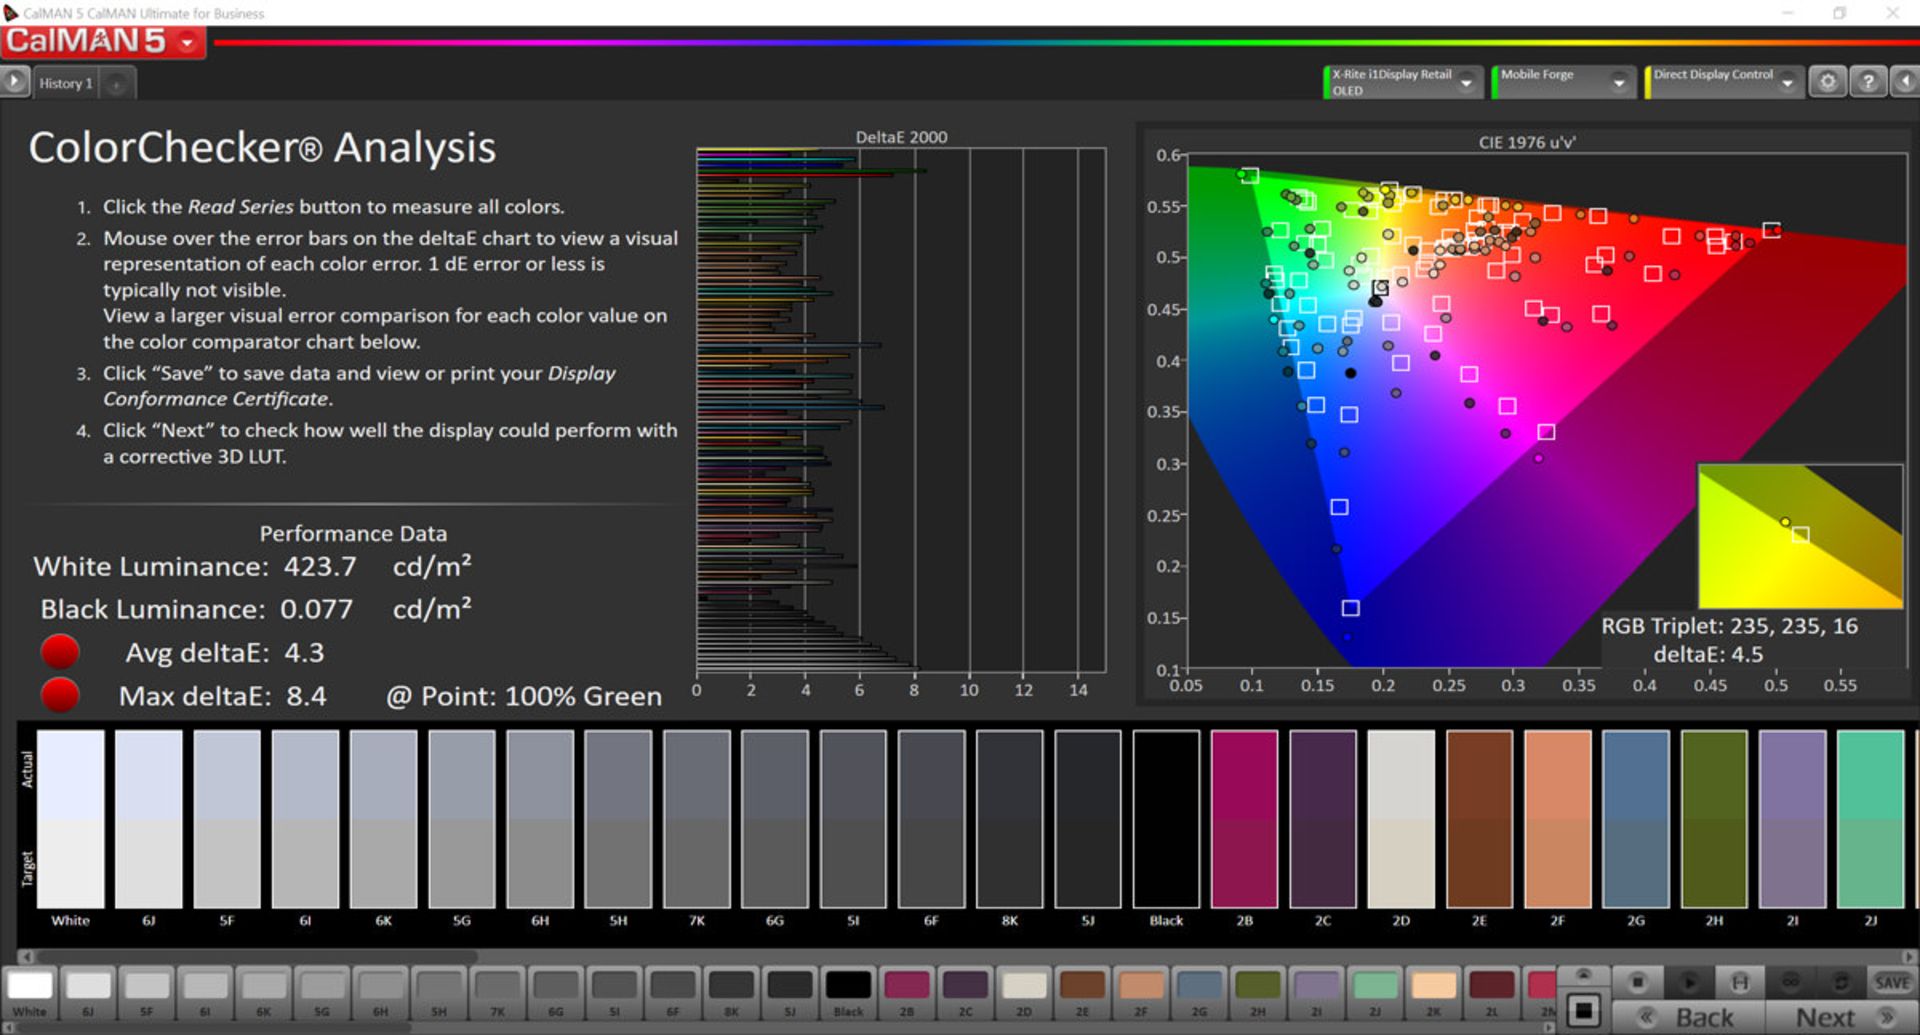 دقت رنگ در حالت Increased Contrast در فضای رنگی DCI-P3 برای گوشی می میکس ۳